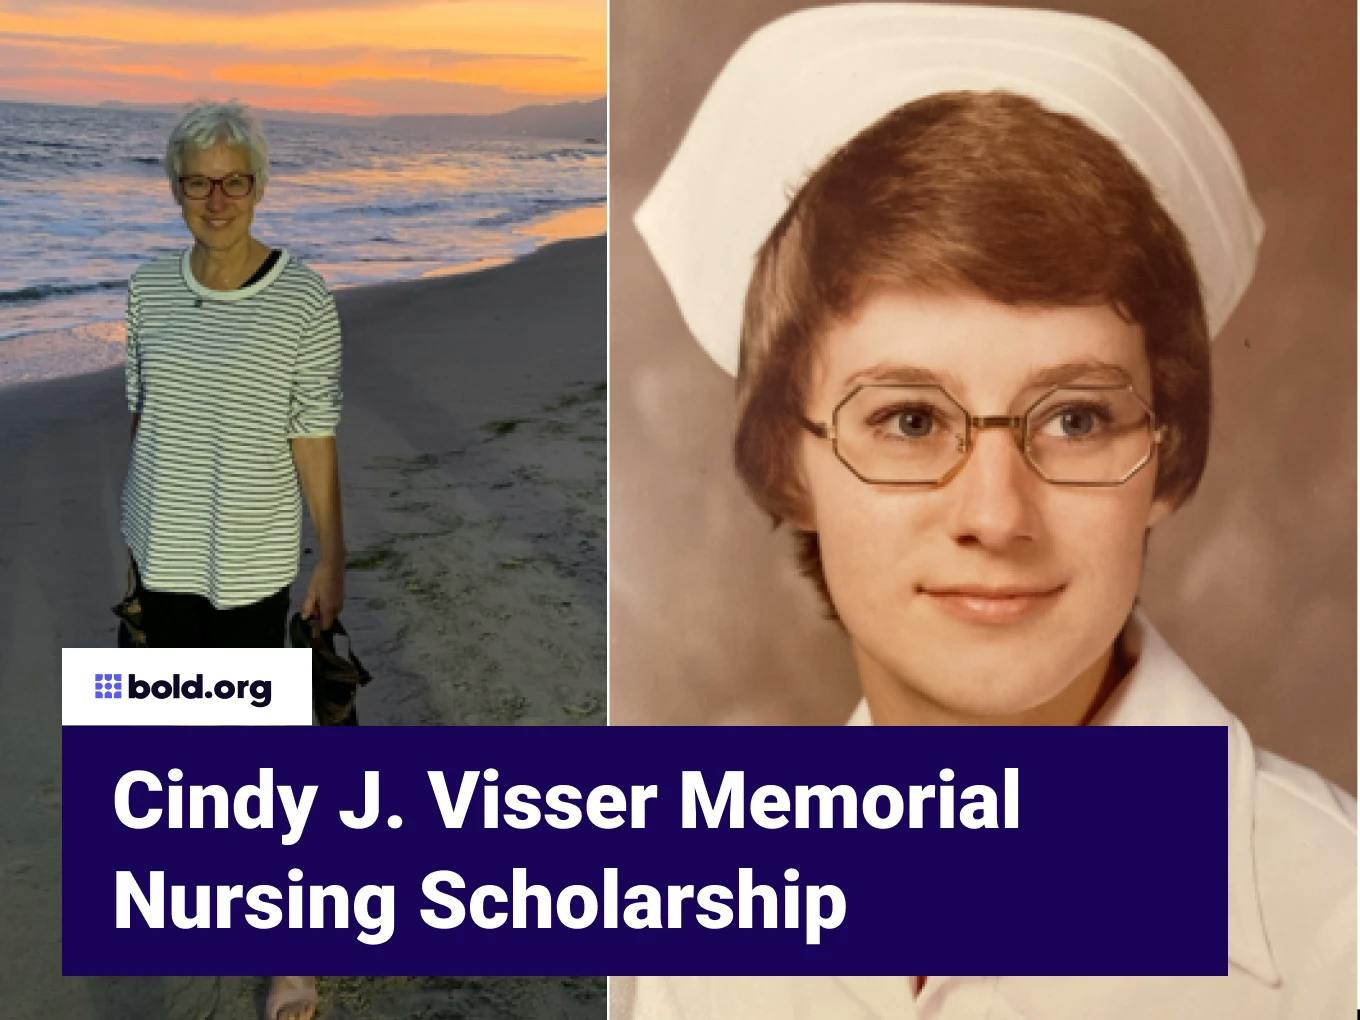 Cindy J. Visser Memorial Nursing Scholarship